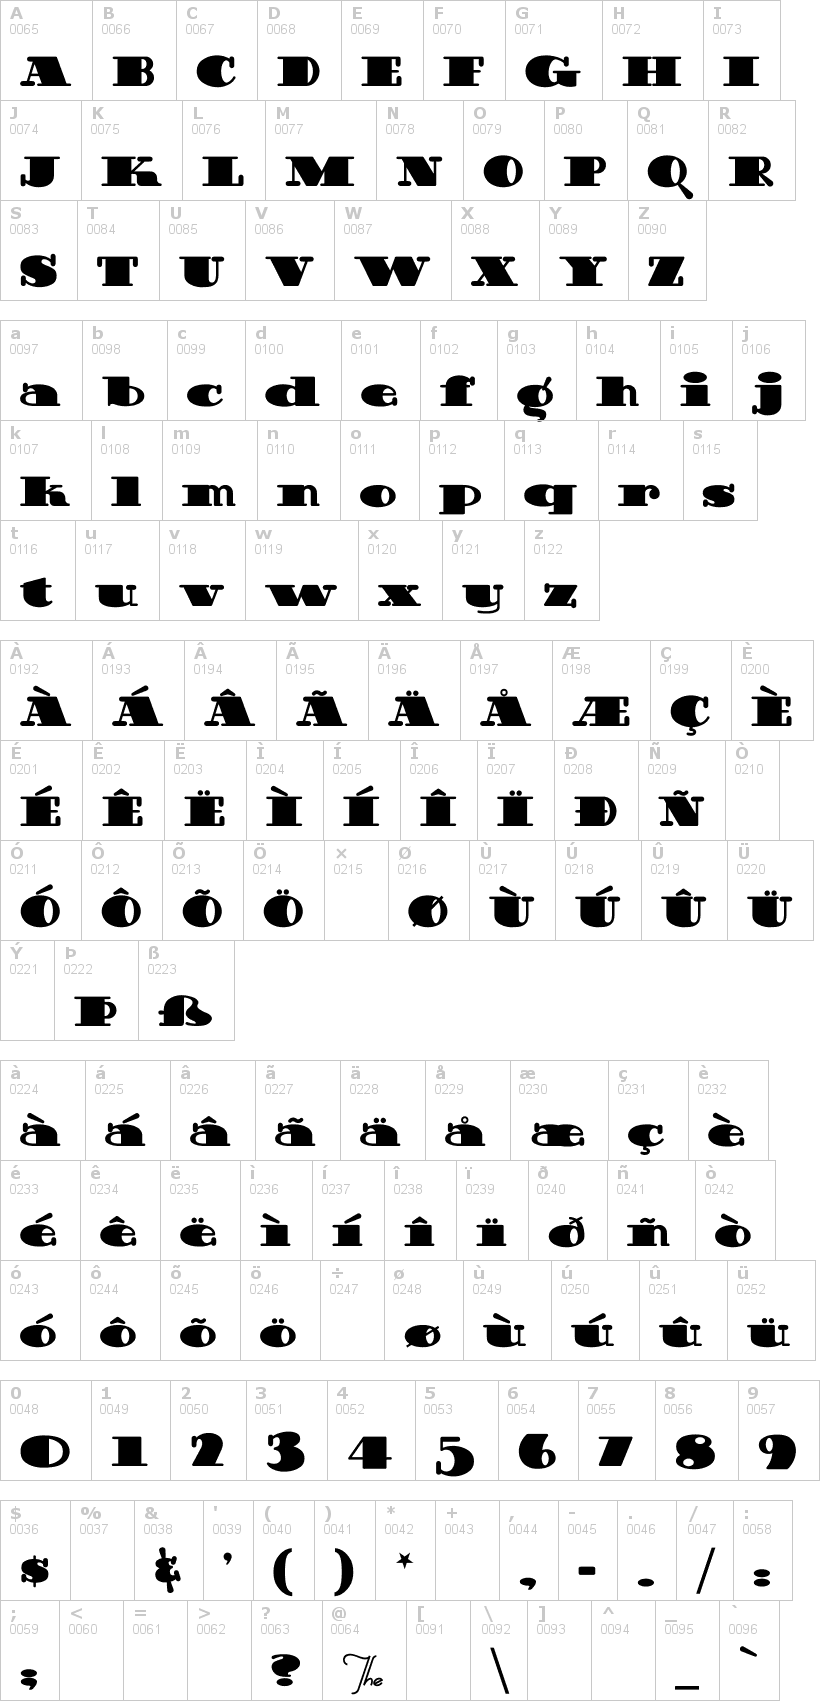 Lettere dell'alfabeto del font guinness-extra-stou con le quali è possibile realizzare adesivi prespaziati